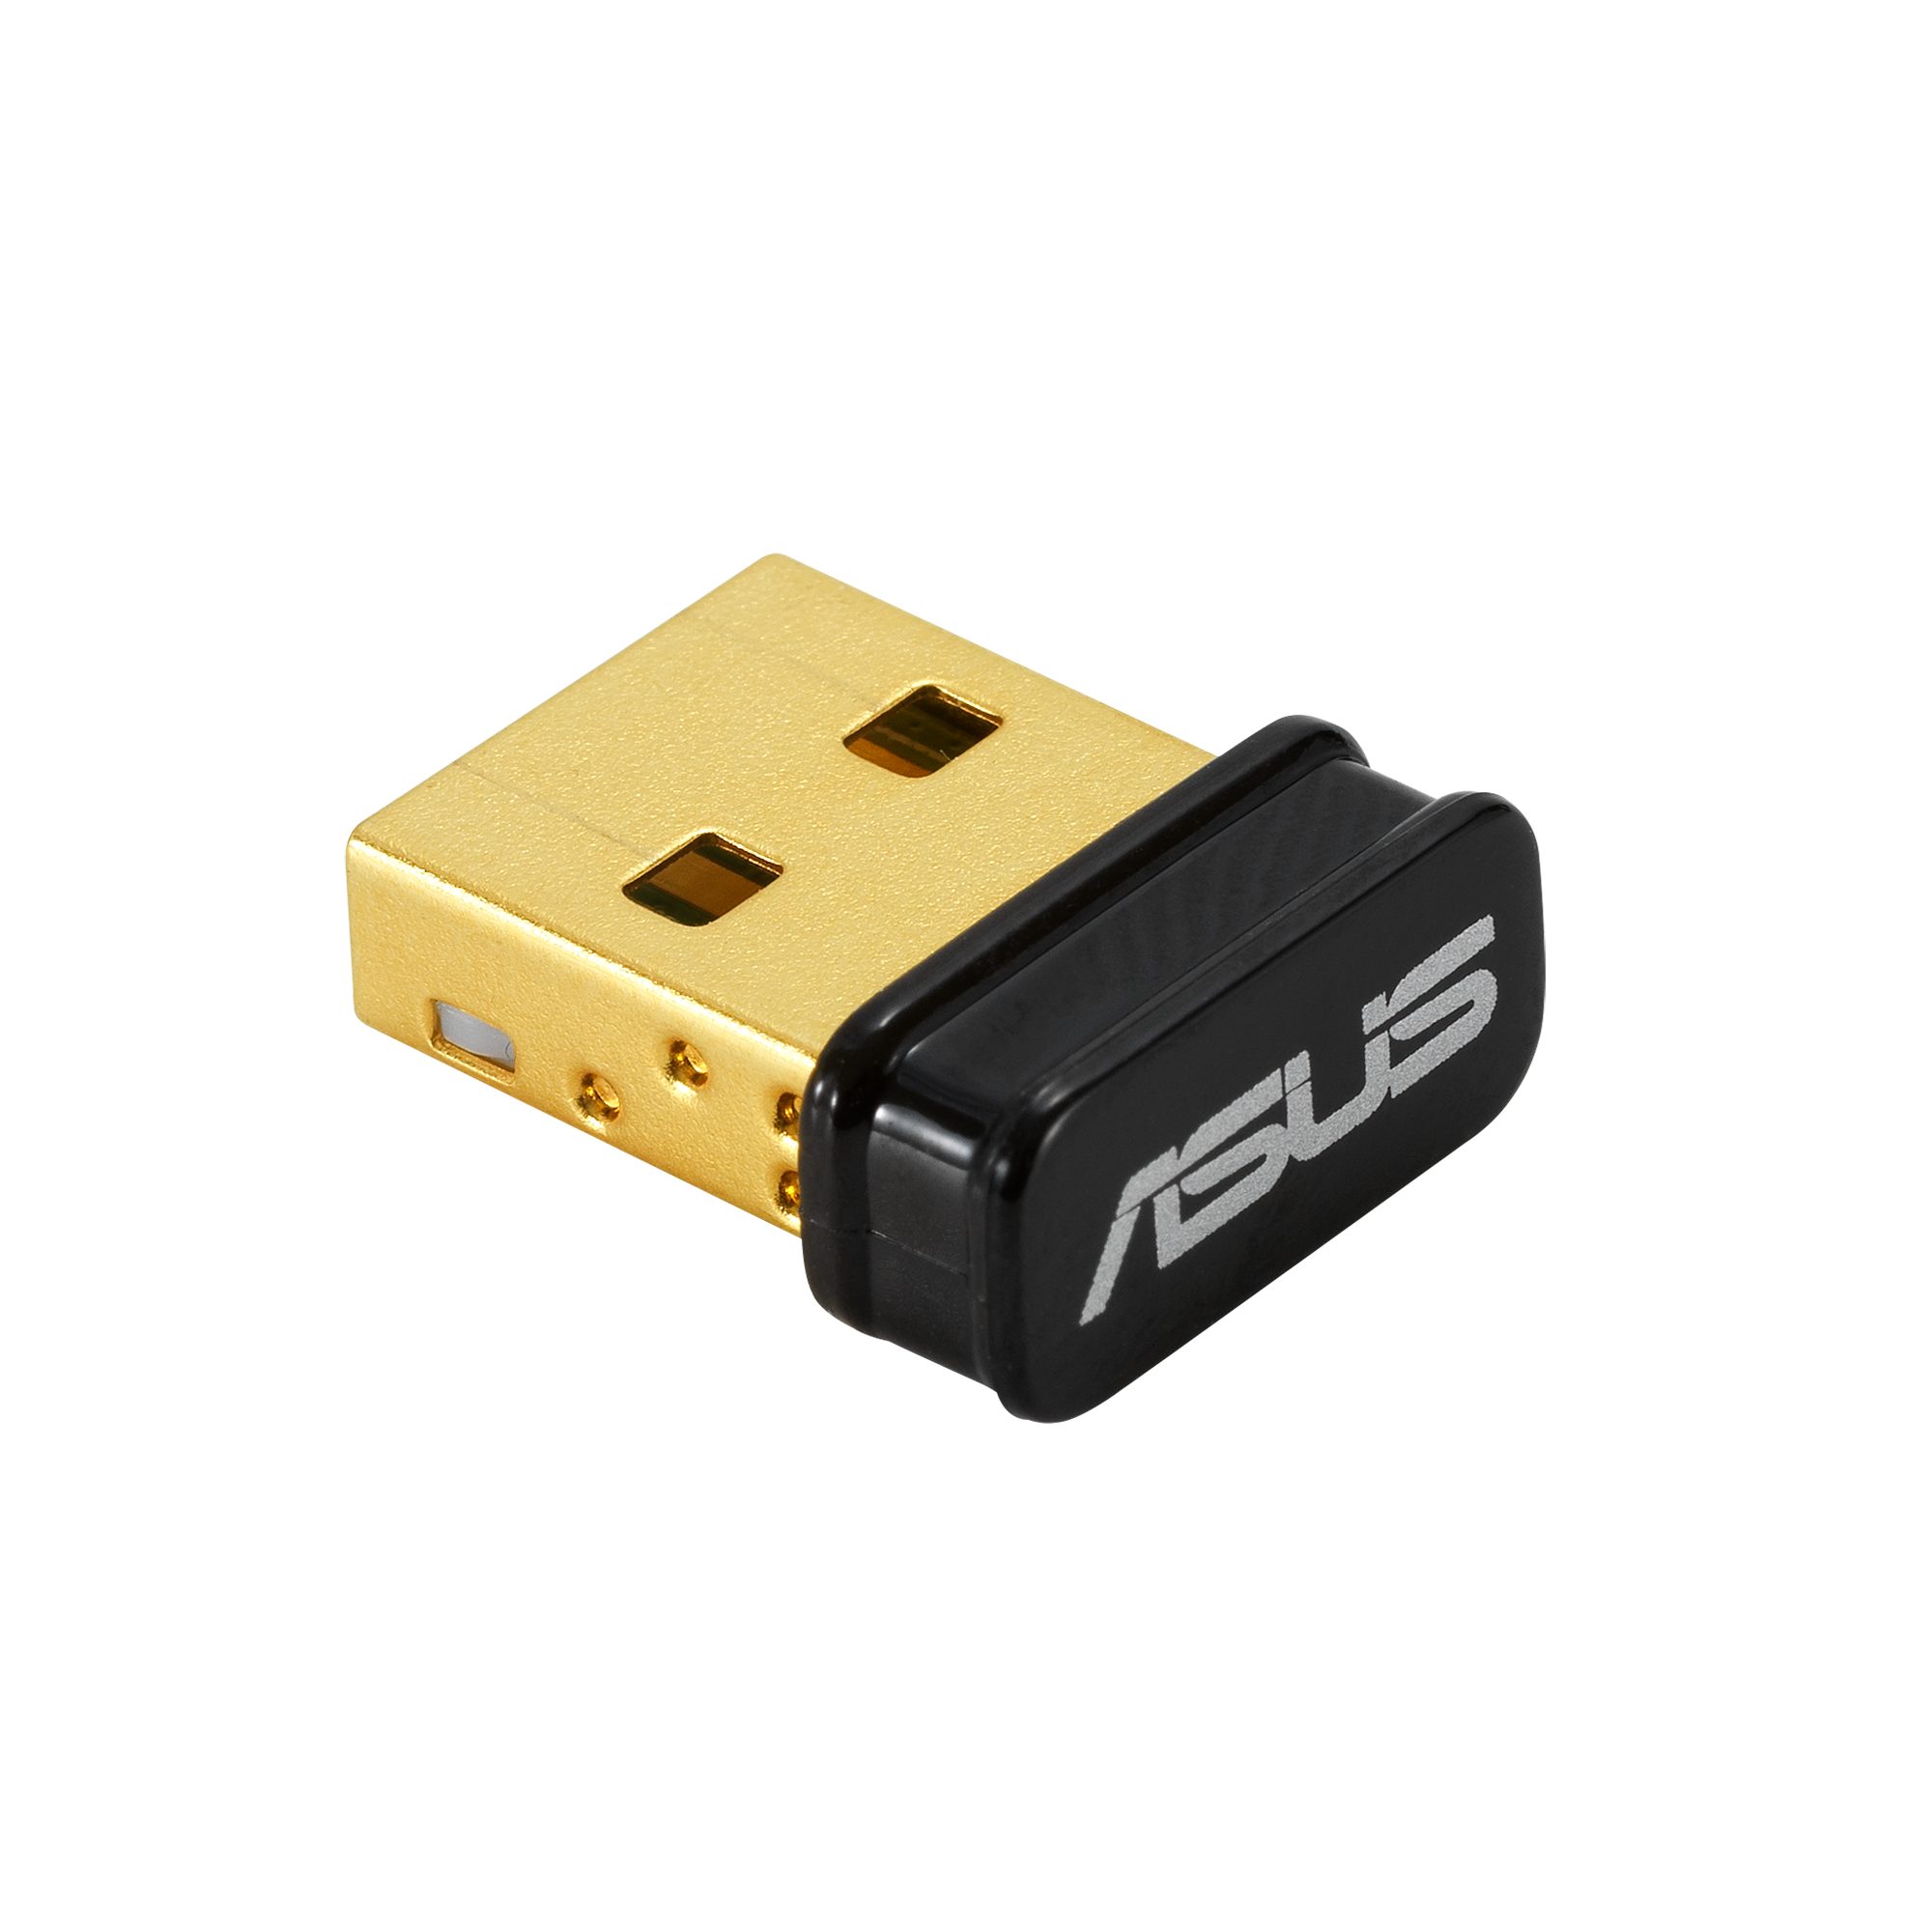 AC1300 MU-MIMO Wi-Fi Nano USB Adapter Singapore